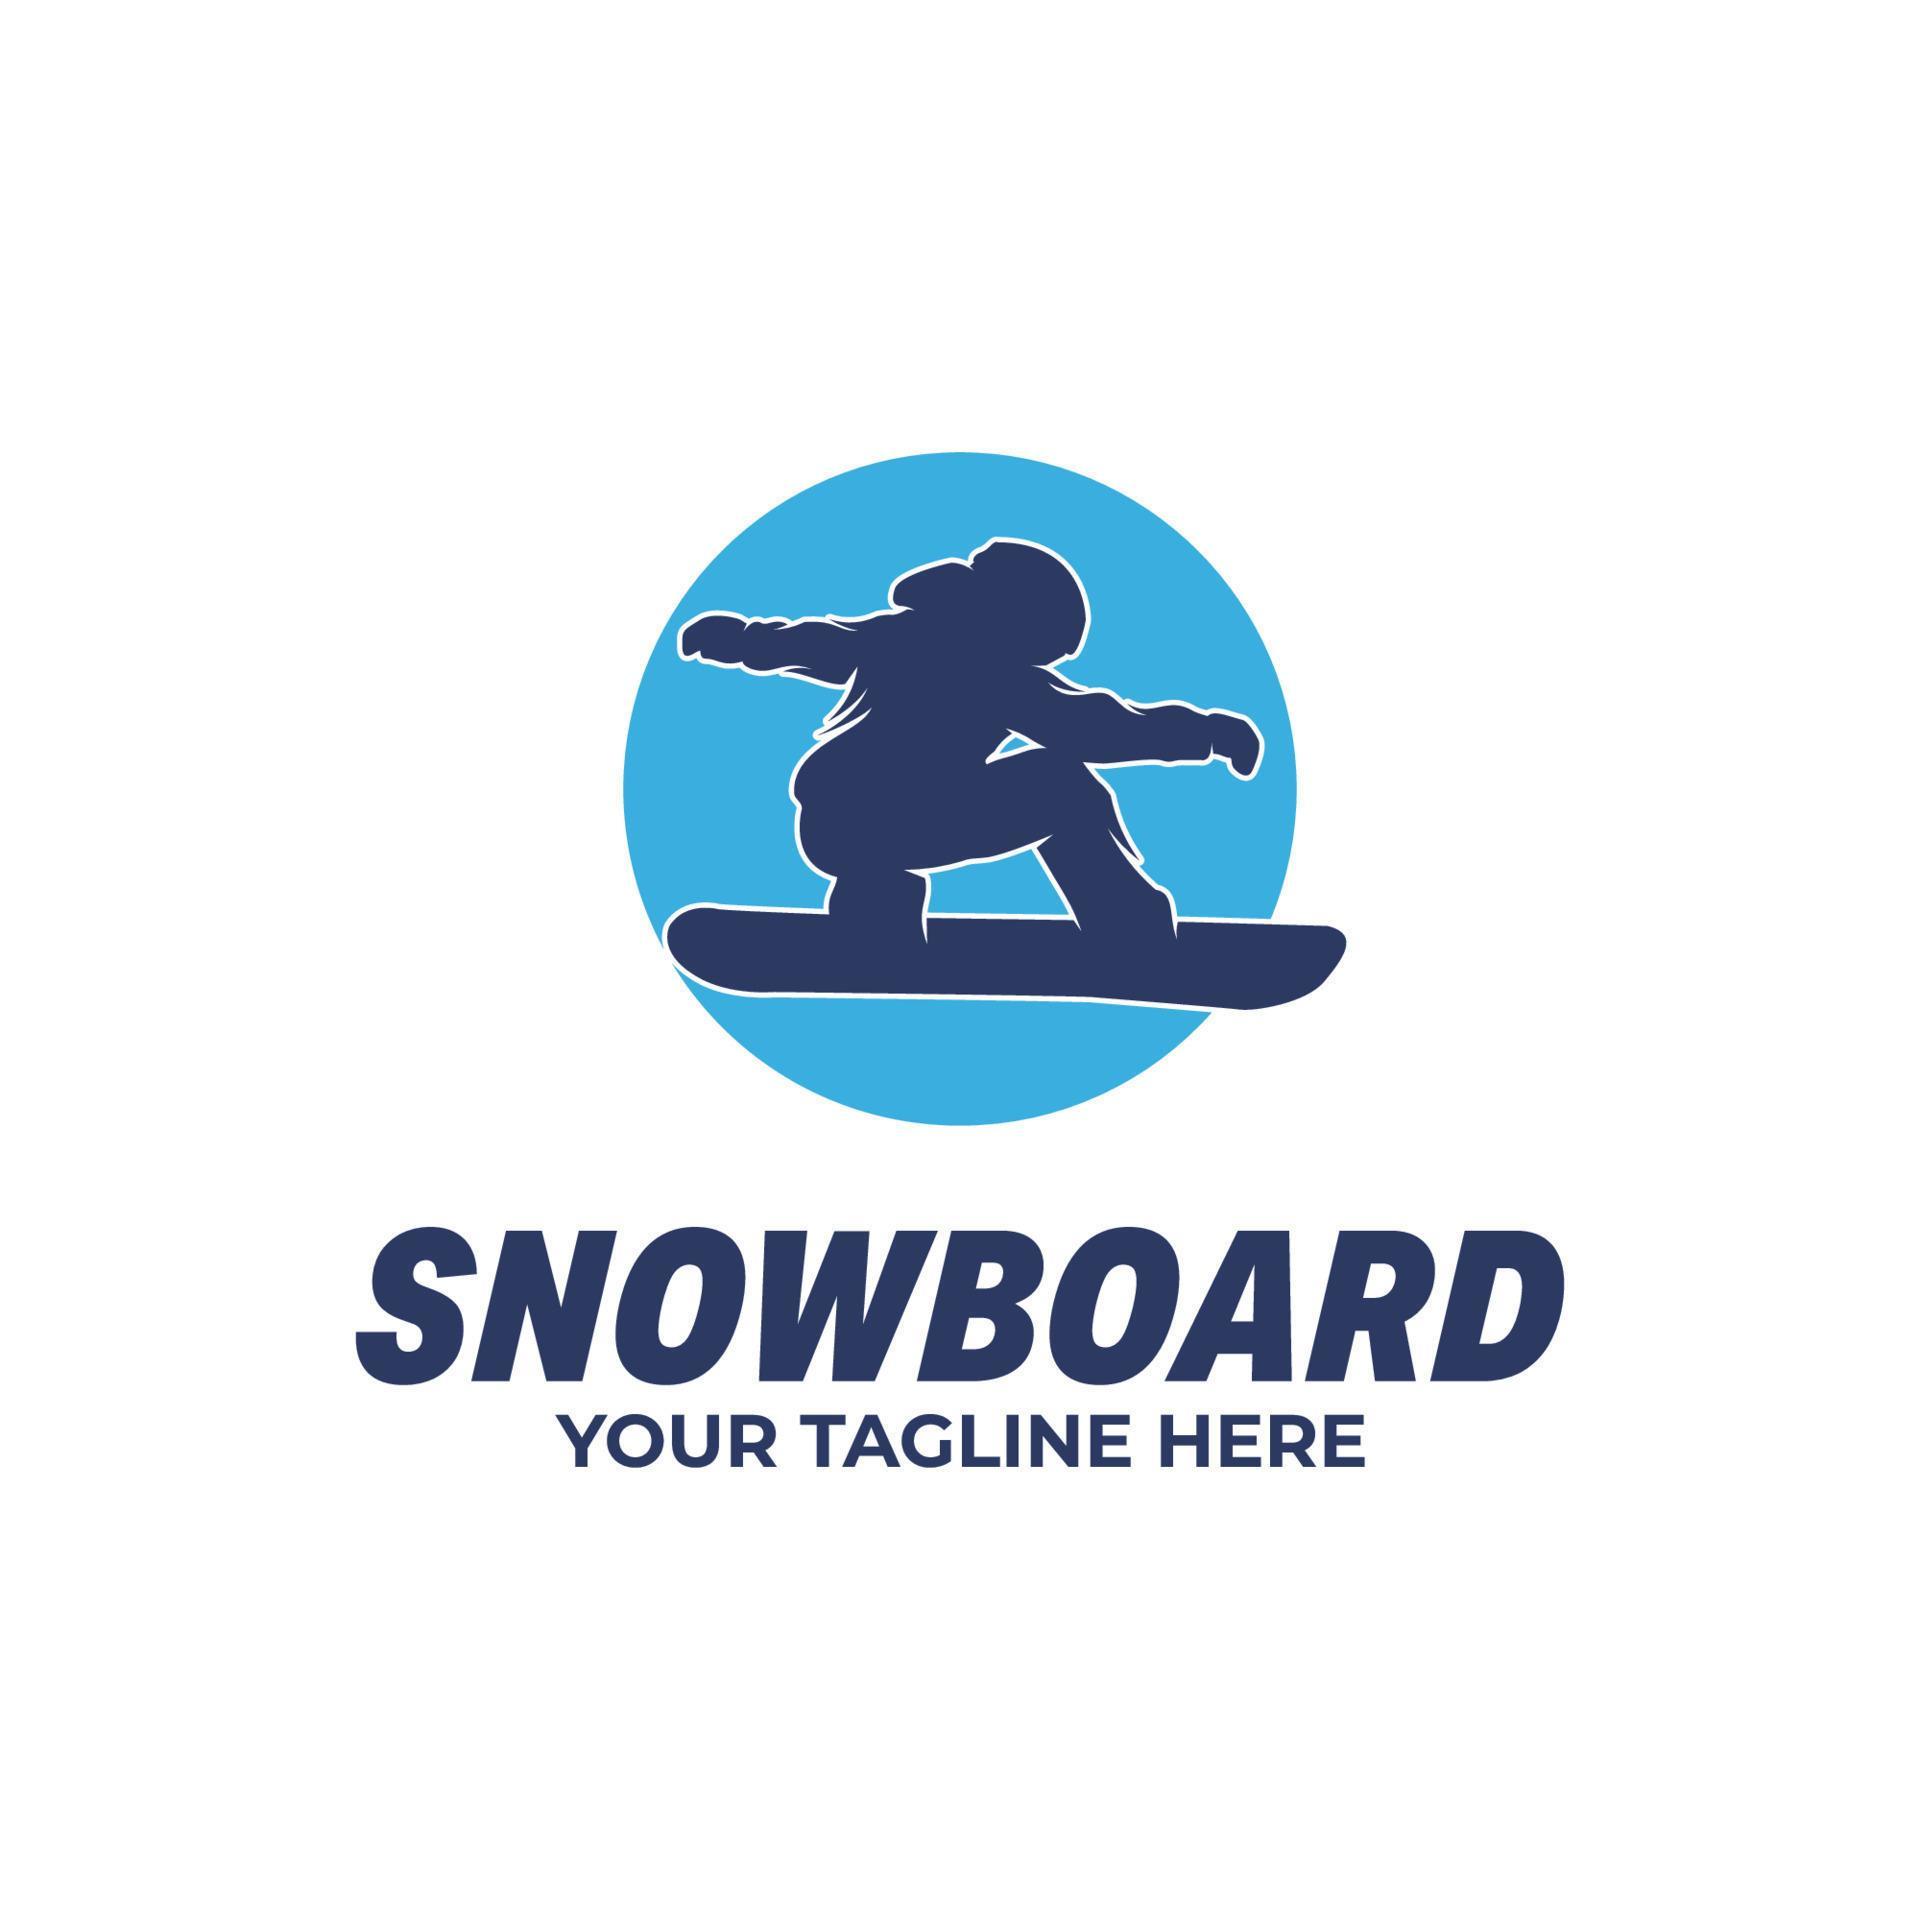 Winter sport - Snowboard logo design template 17148015 Vector Art at ...